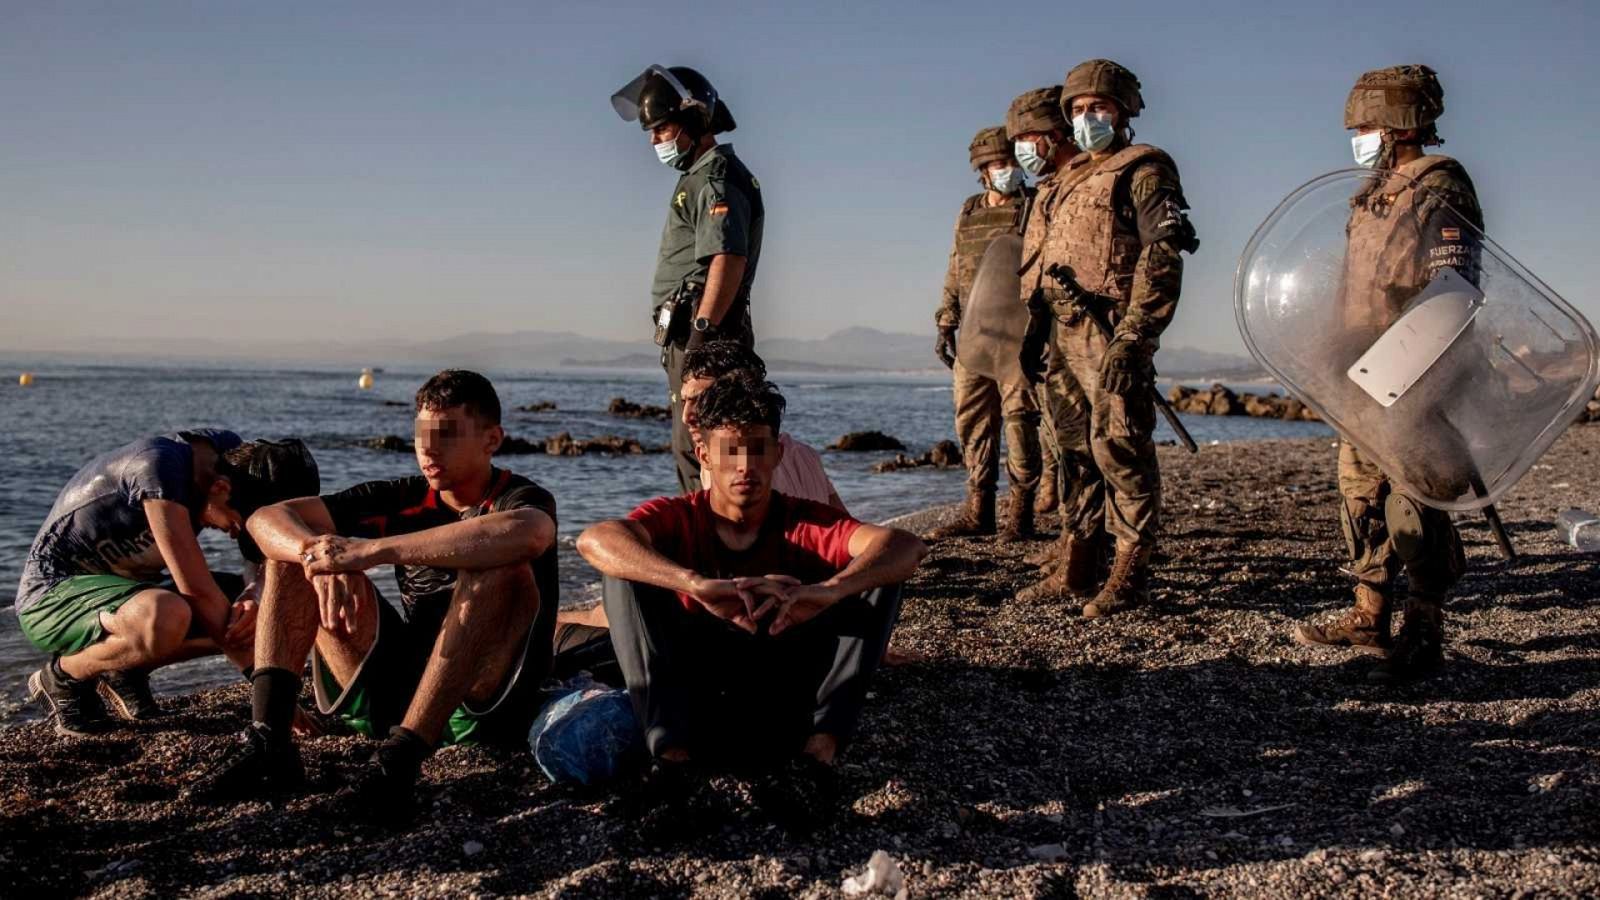 Interior ordena la repatriación de los menores que lograron entrar en Ceuta en mayo - Ver ahora